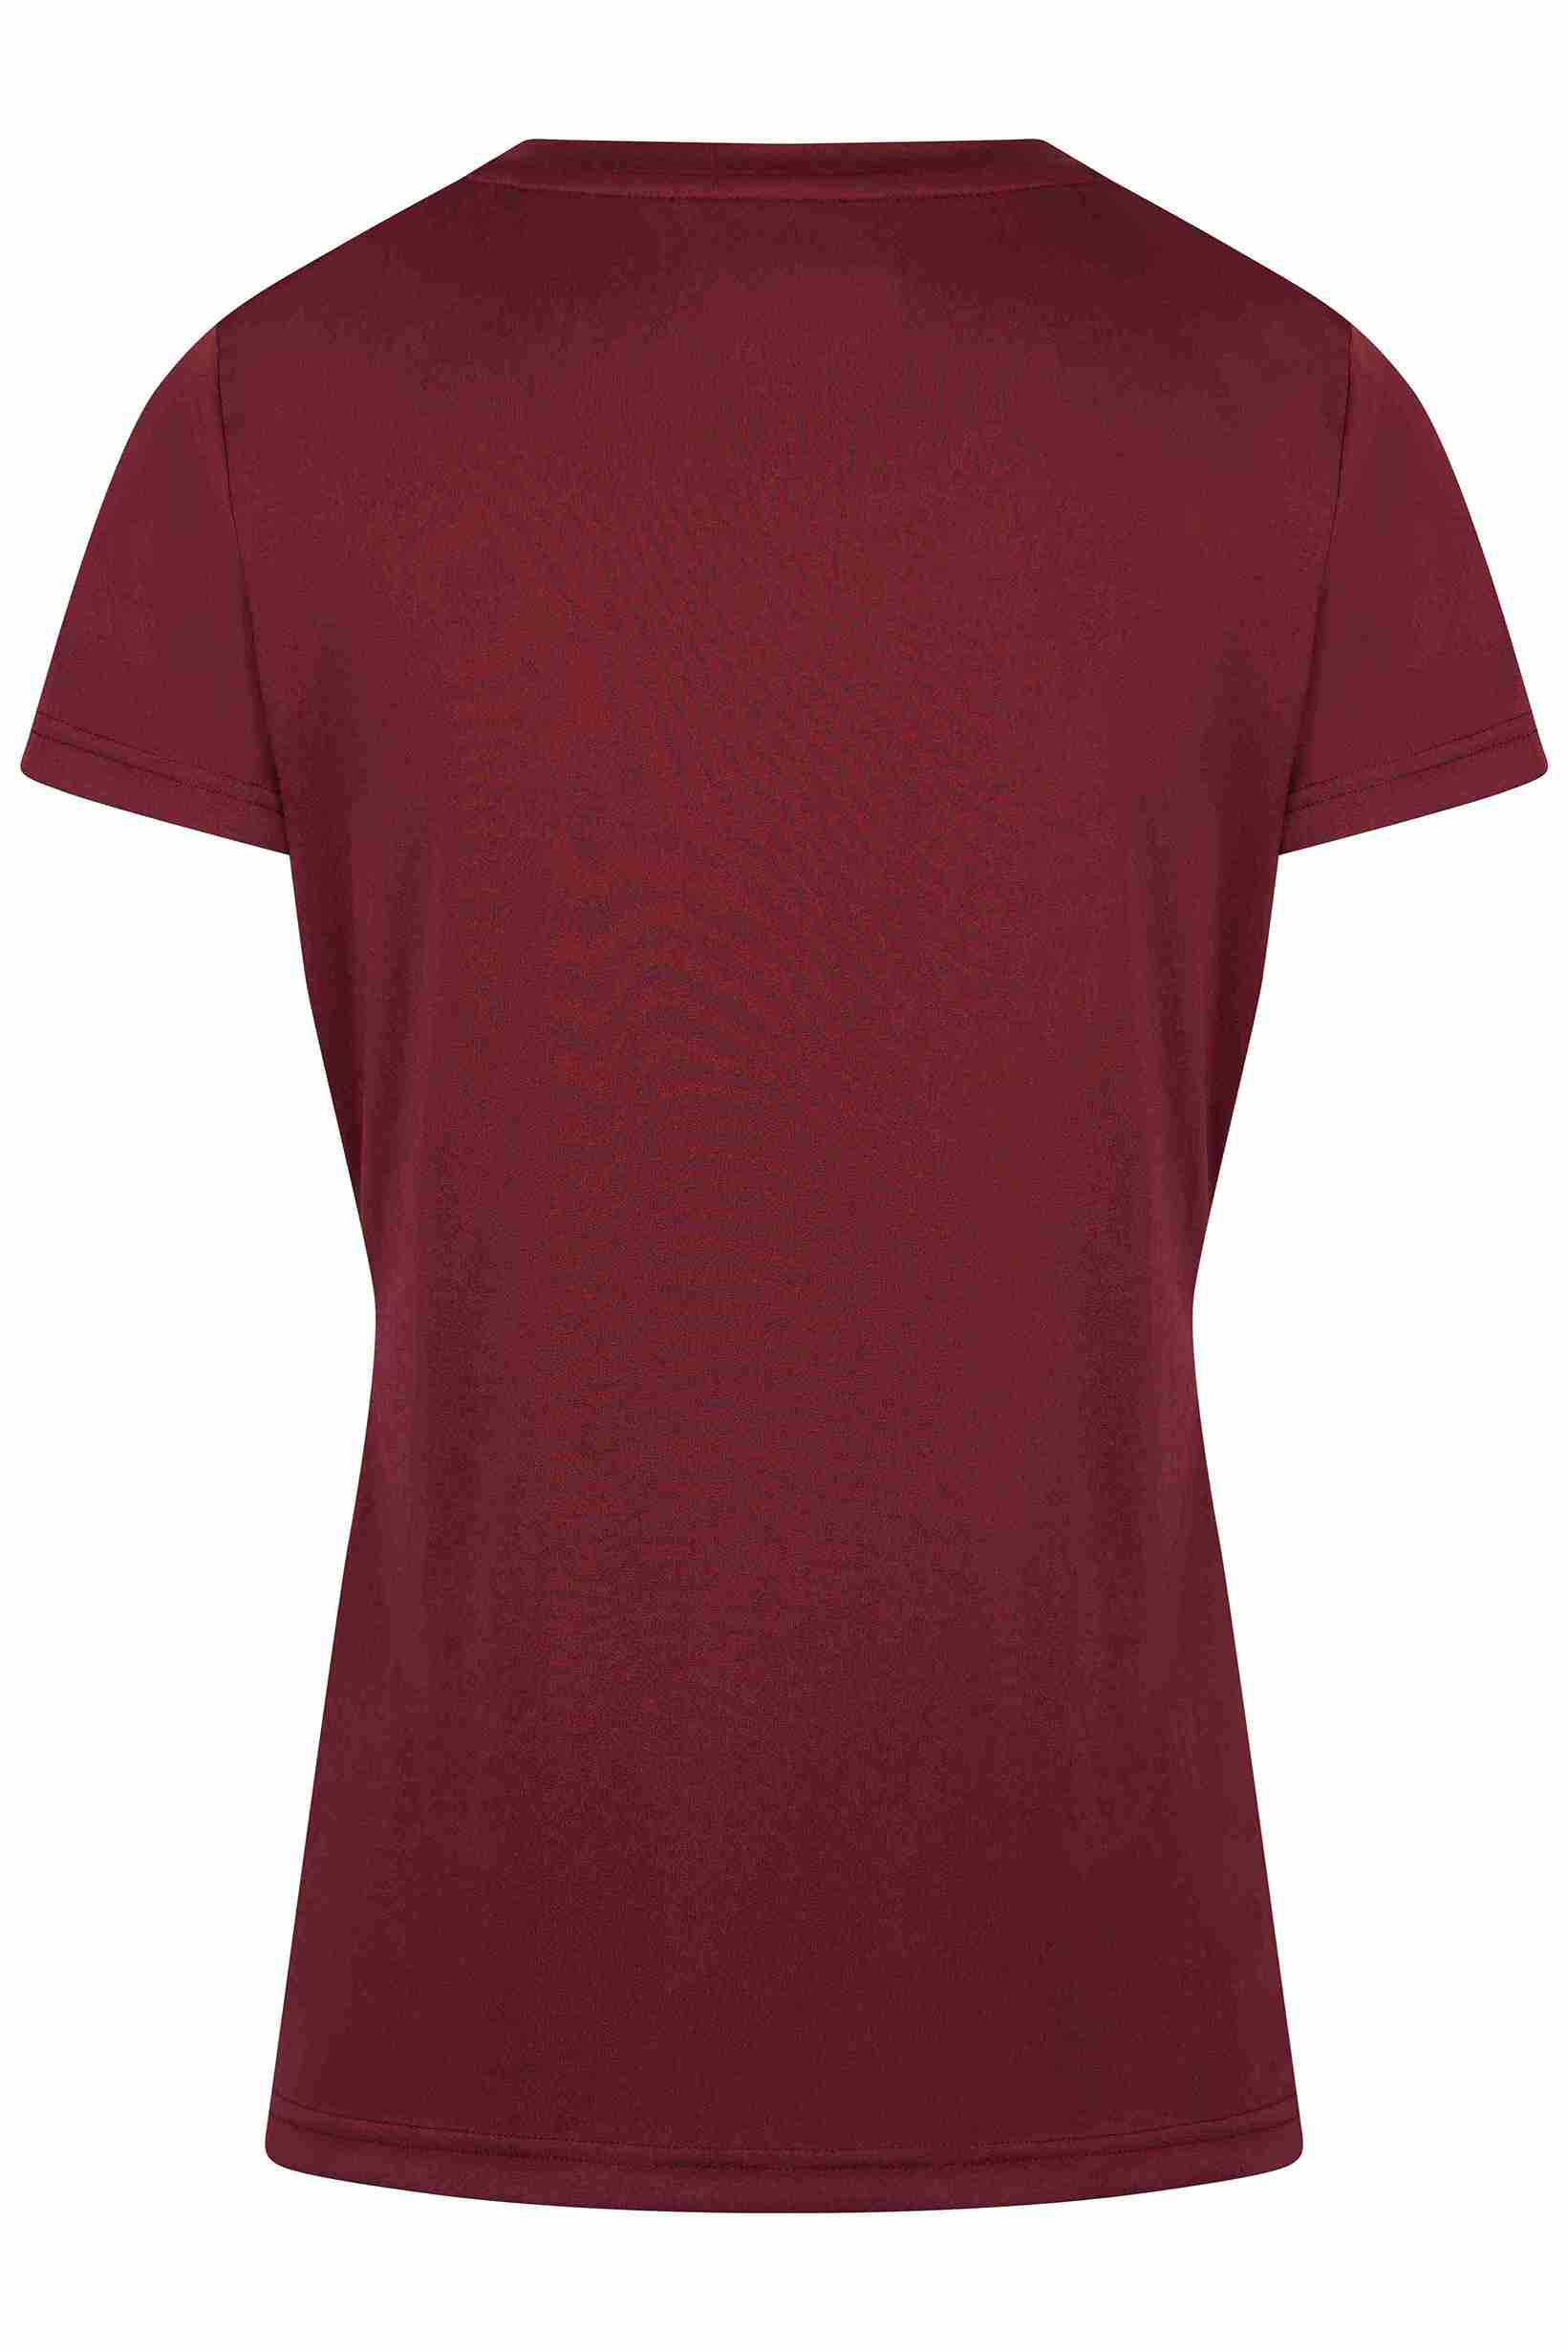 VICTOR T-Shirt T-44102D Women - Rot XL